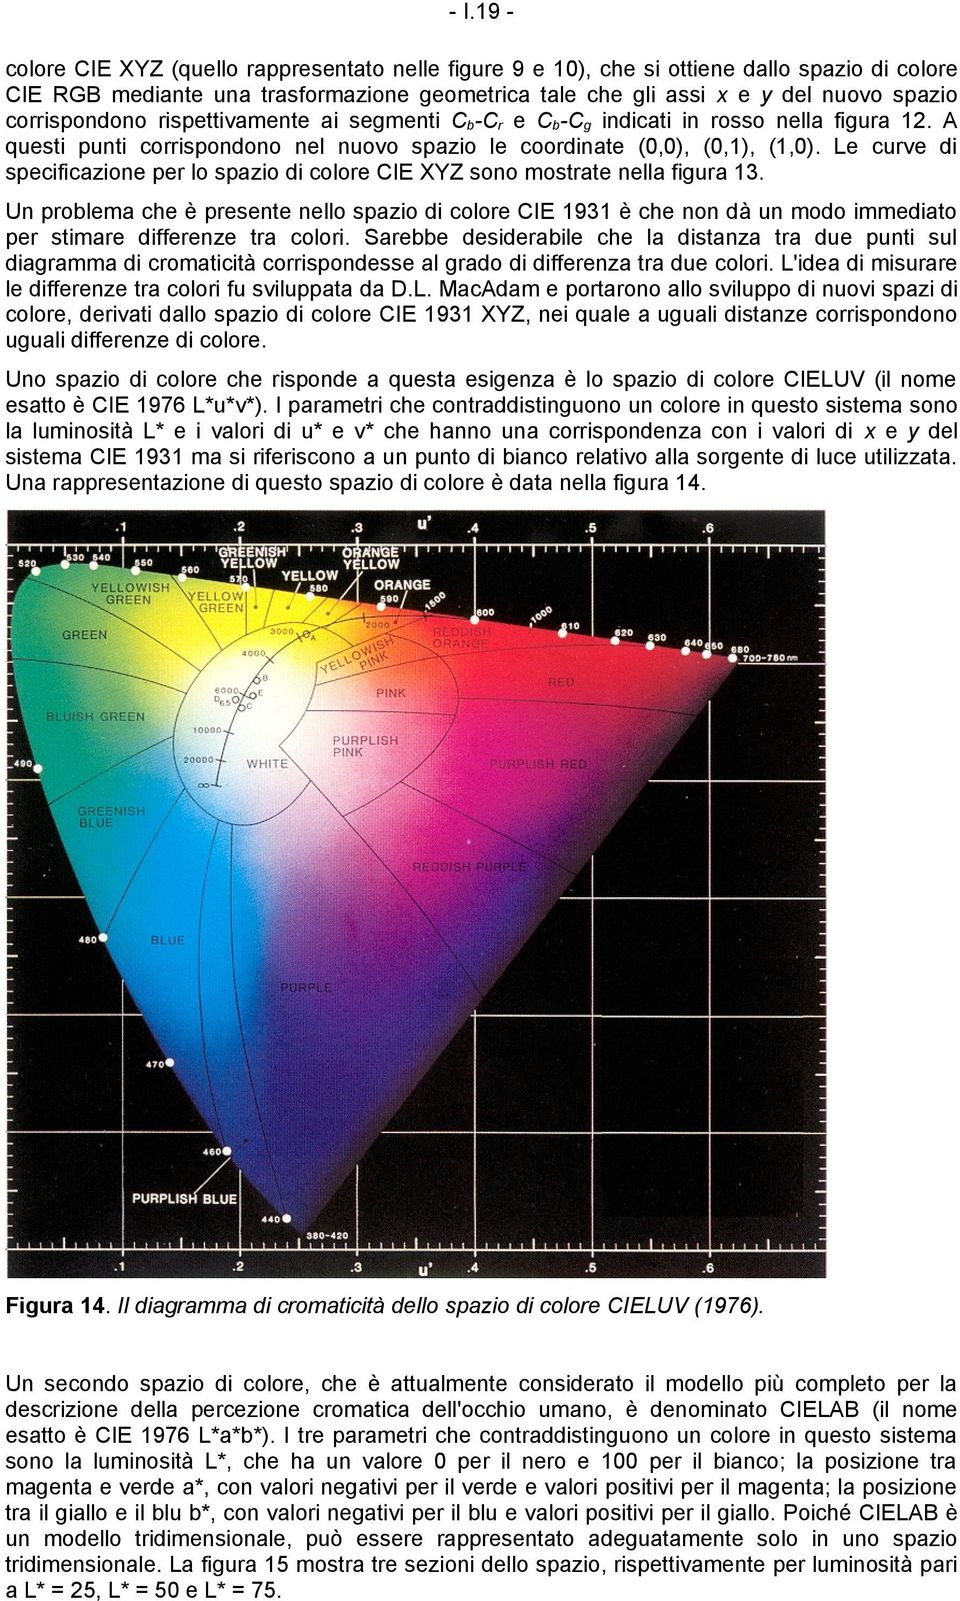 Le curve di specificazione per lo spazio di colore CIE XYZ sono mostrate nella figura 13.